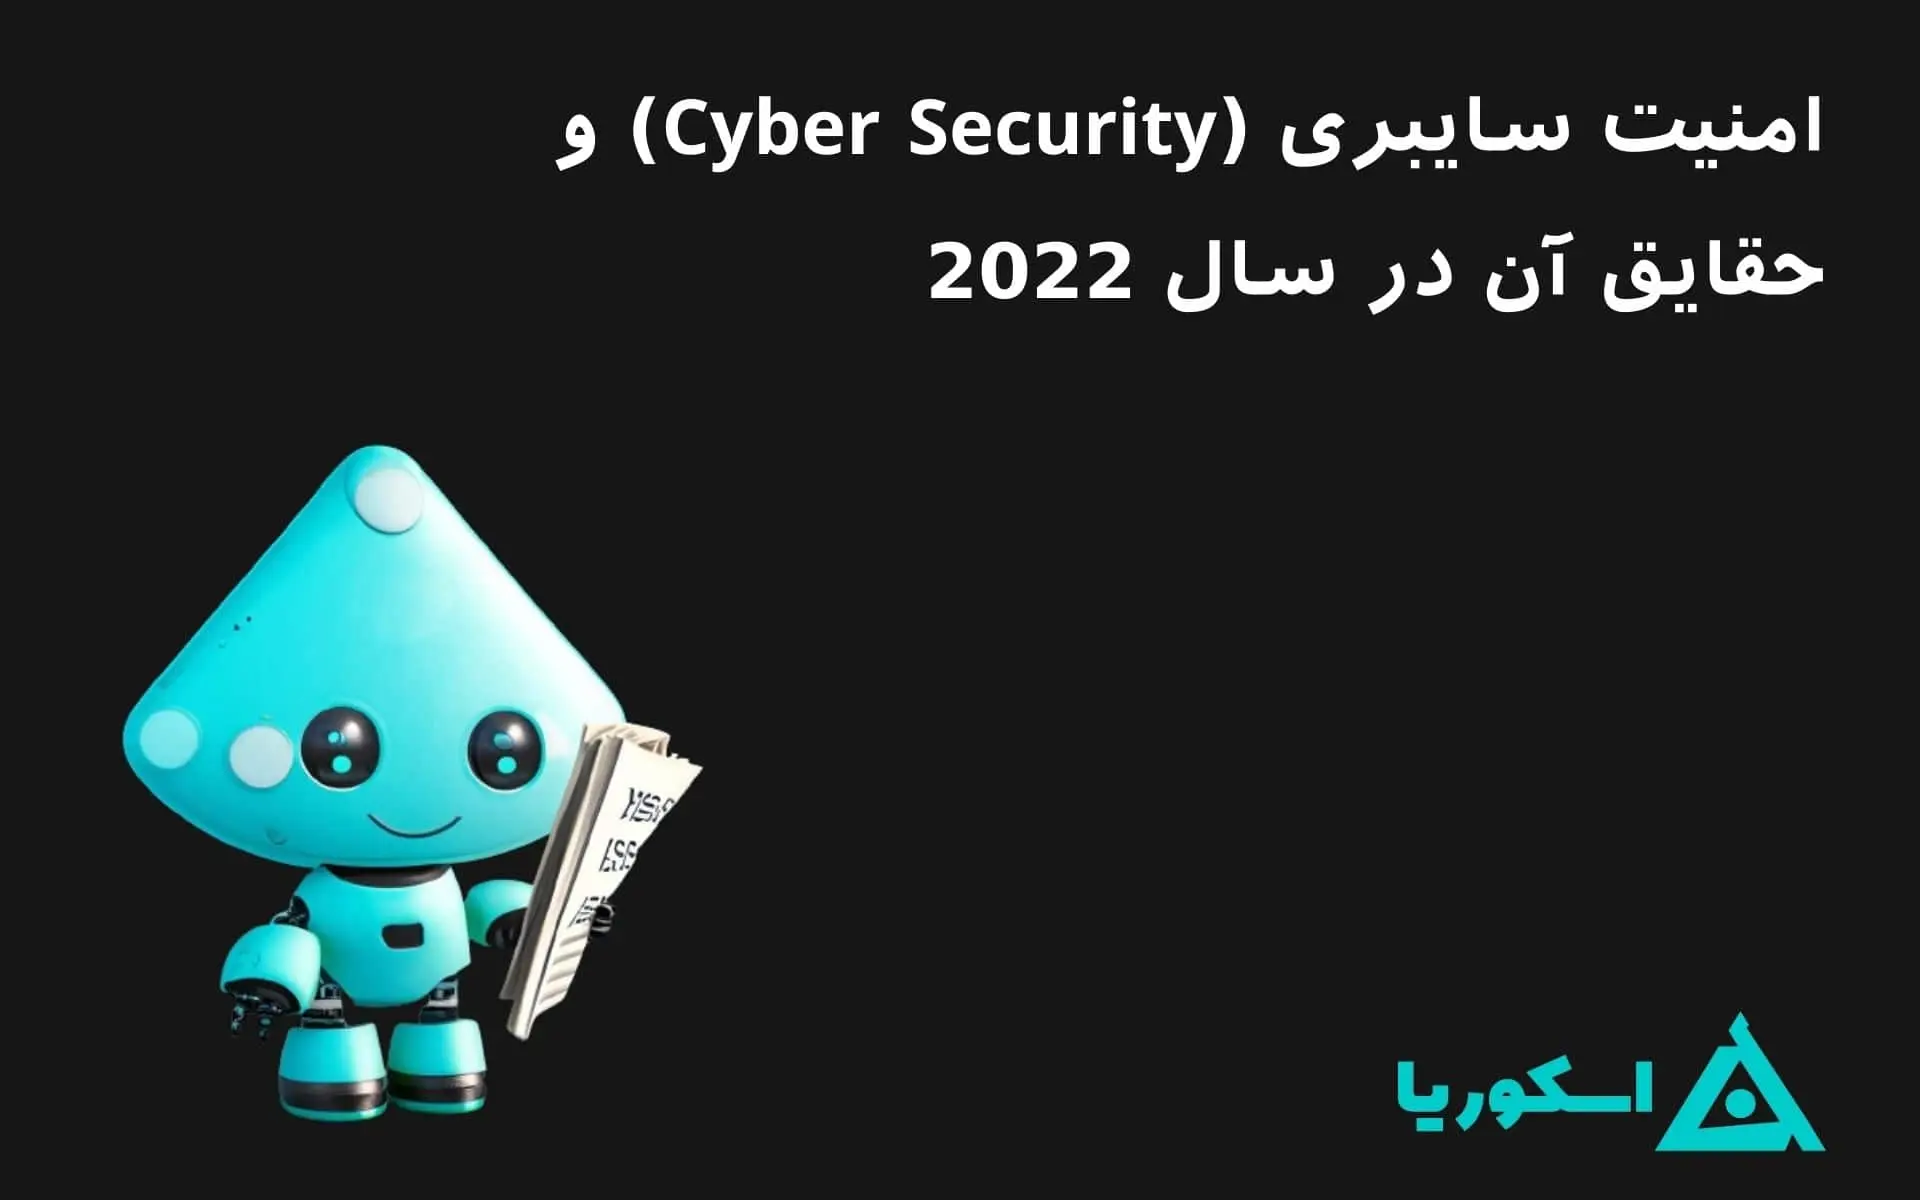 تصویر شاخص مقاله امنیت سایبری و حقایق آن در سال 2022